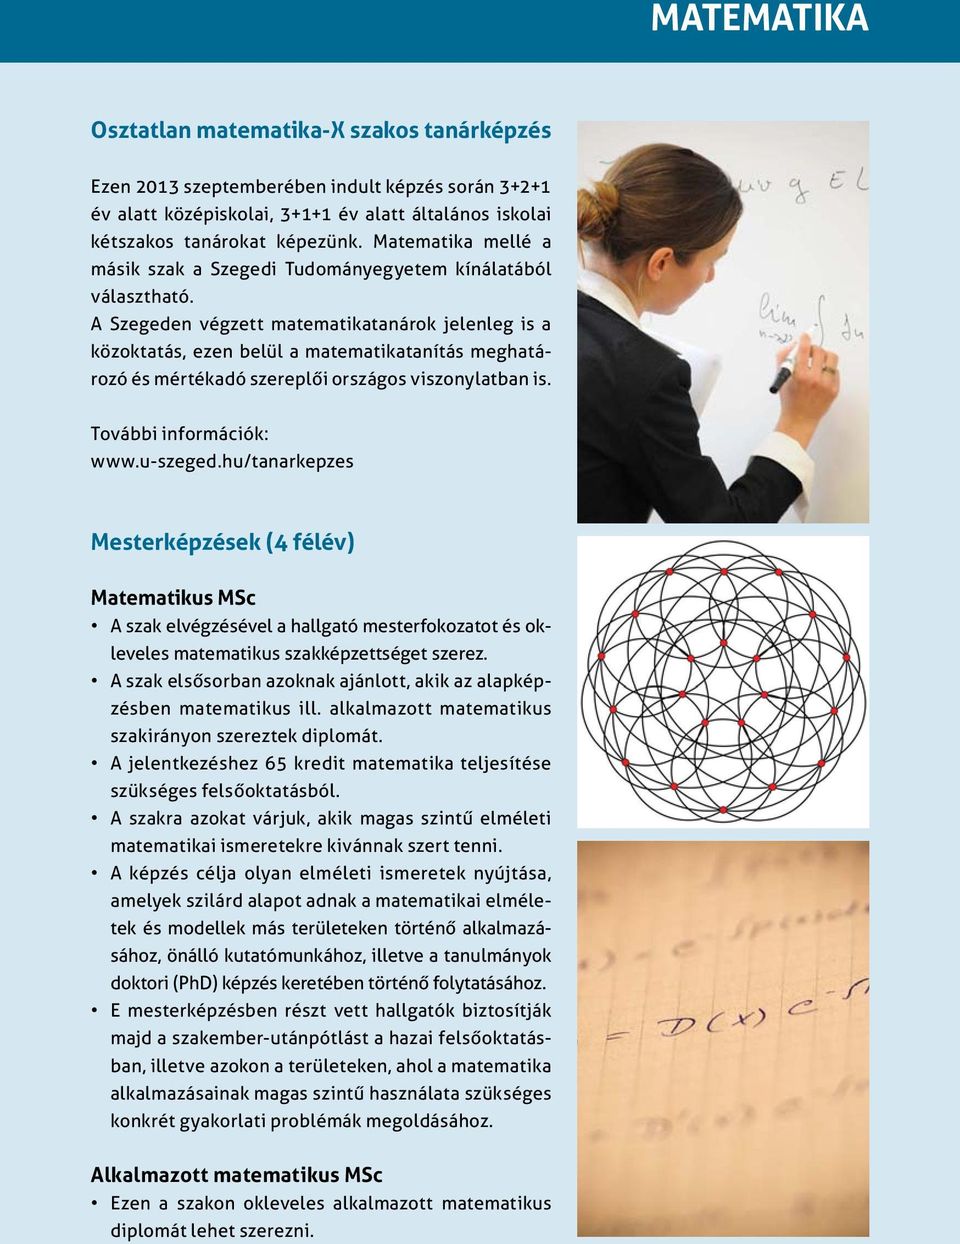 A Szegeden végzett matematikatanárok jelenleg is a közoktatás, ezen belül a matematikatanítás meghatározó és mértékadó szereplői országos viszonylatban is. További információk: www.u-szeged.